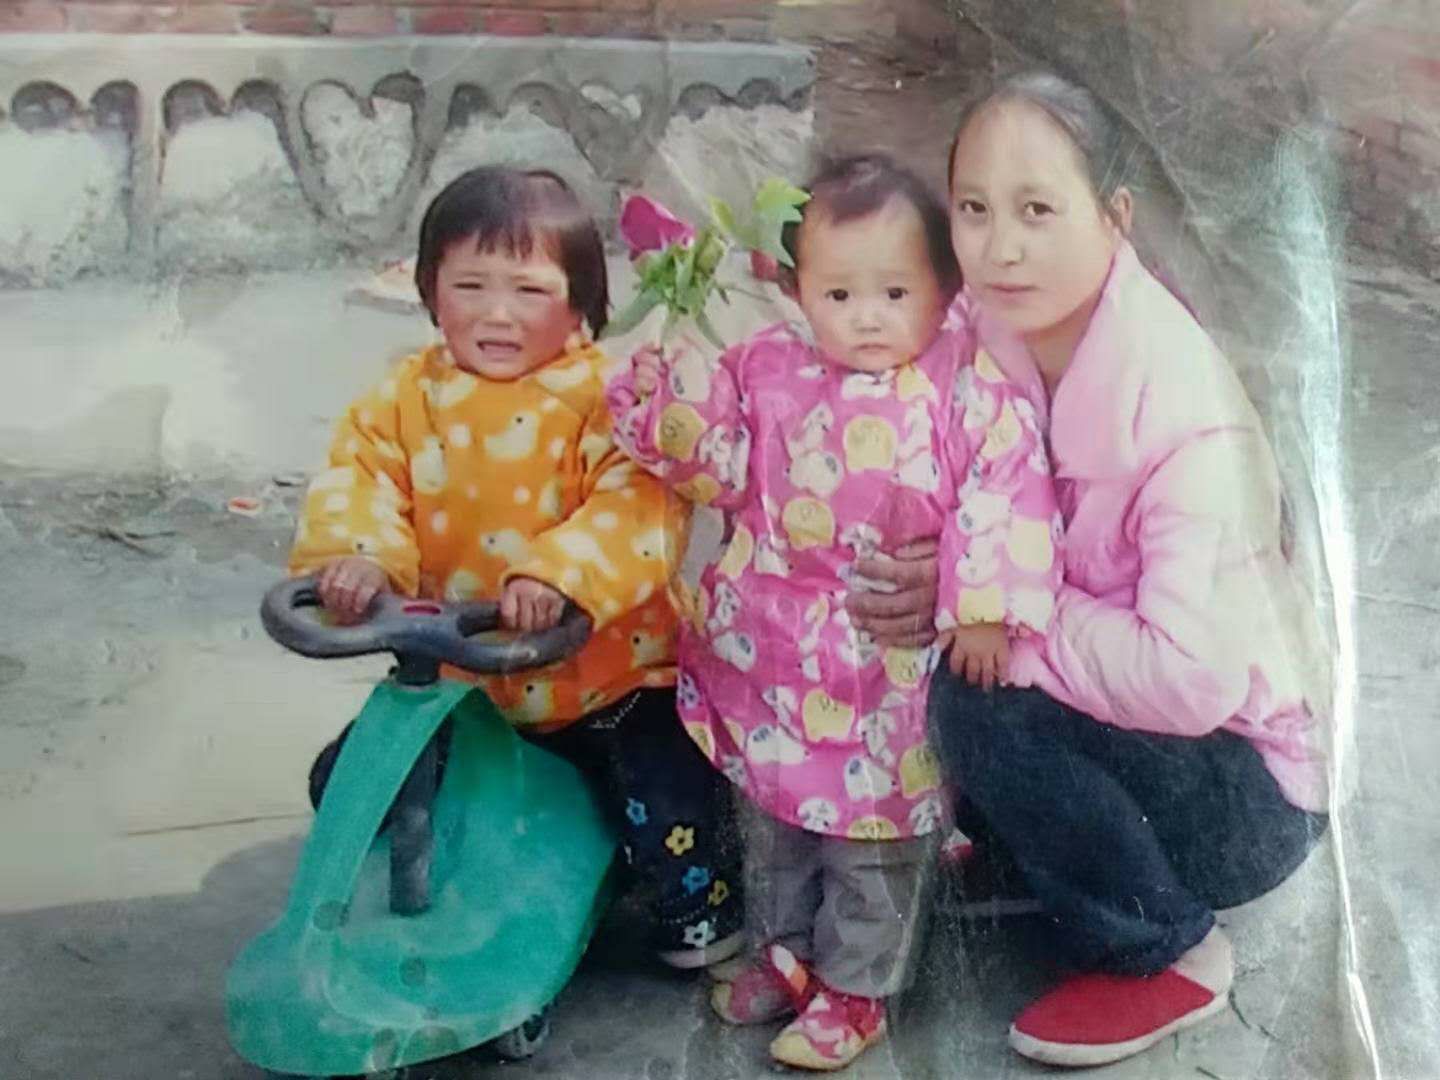 我想找到我的妈妈（黄晓芳）- 江苏省盐城市寻人找人网络平台